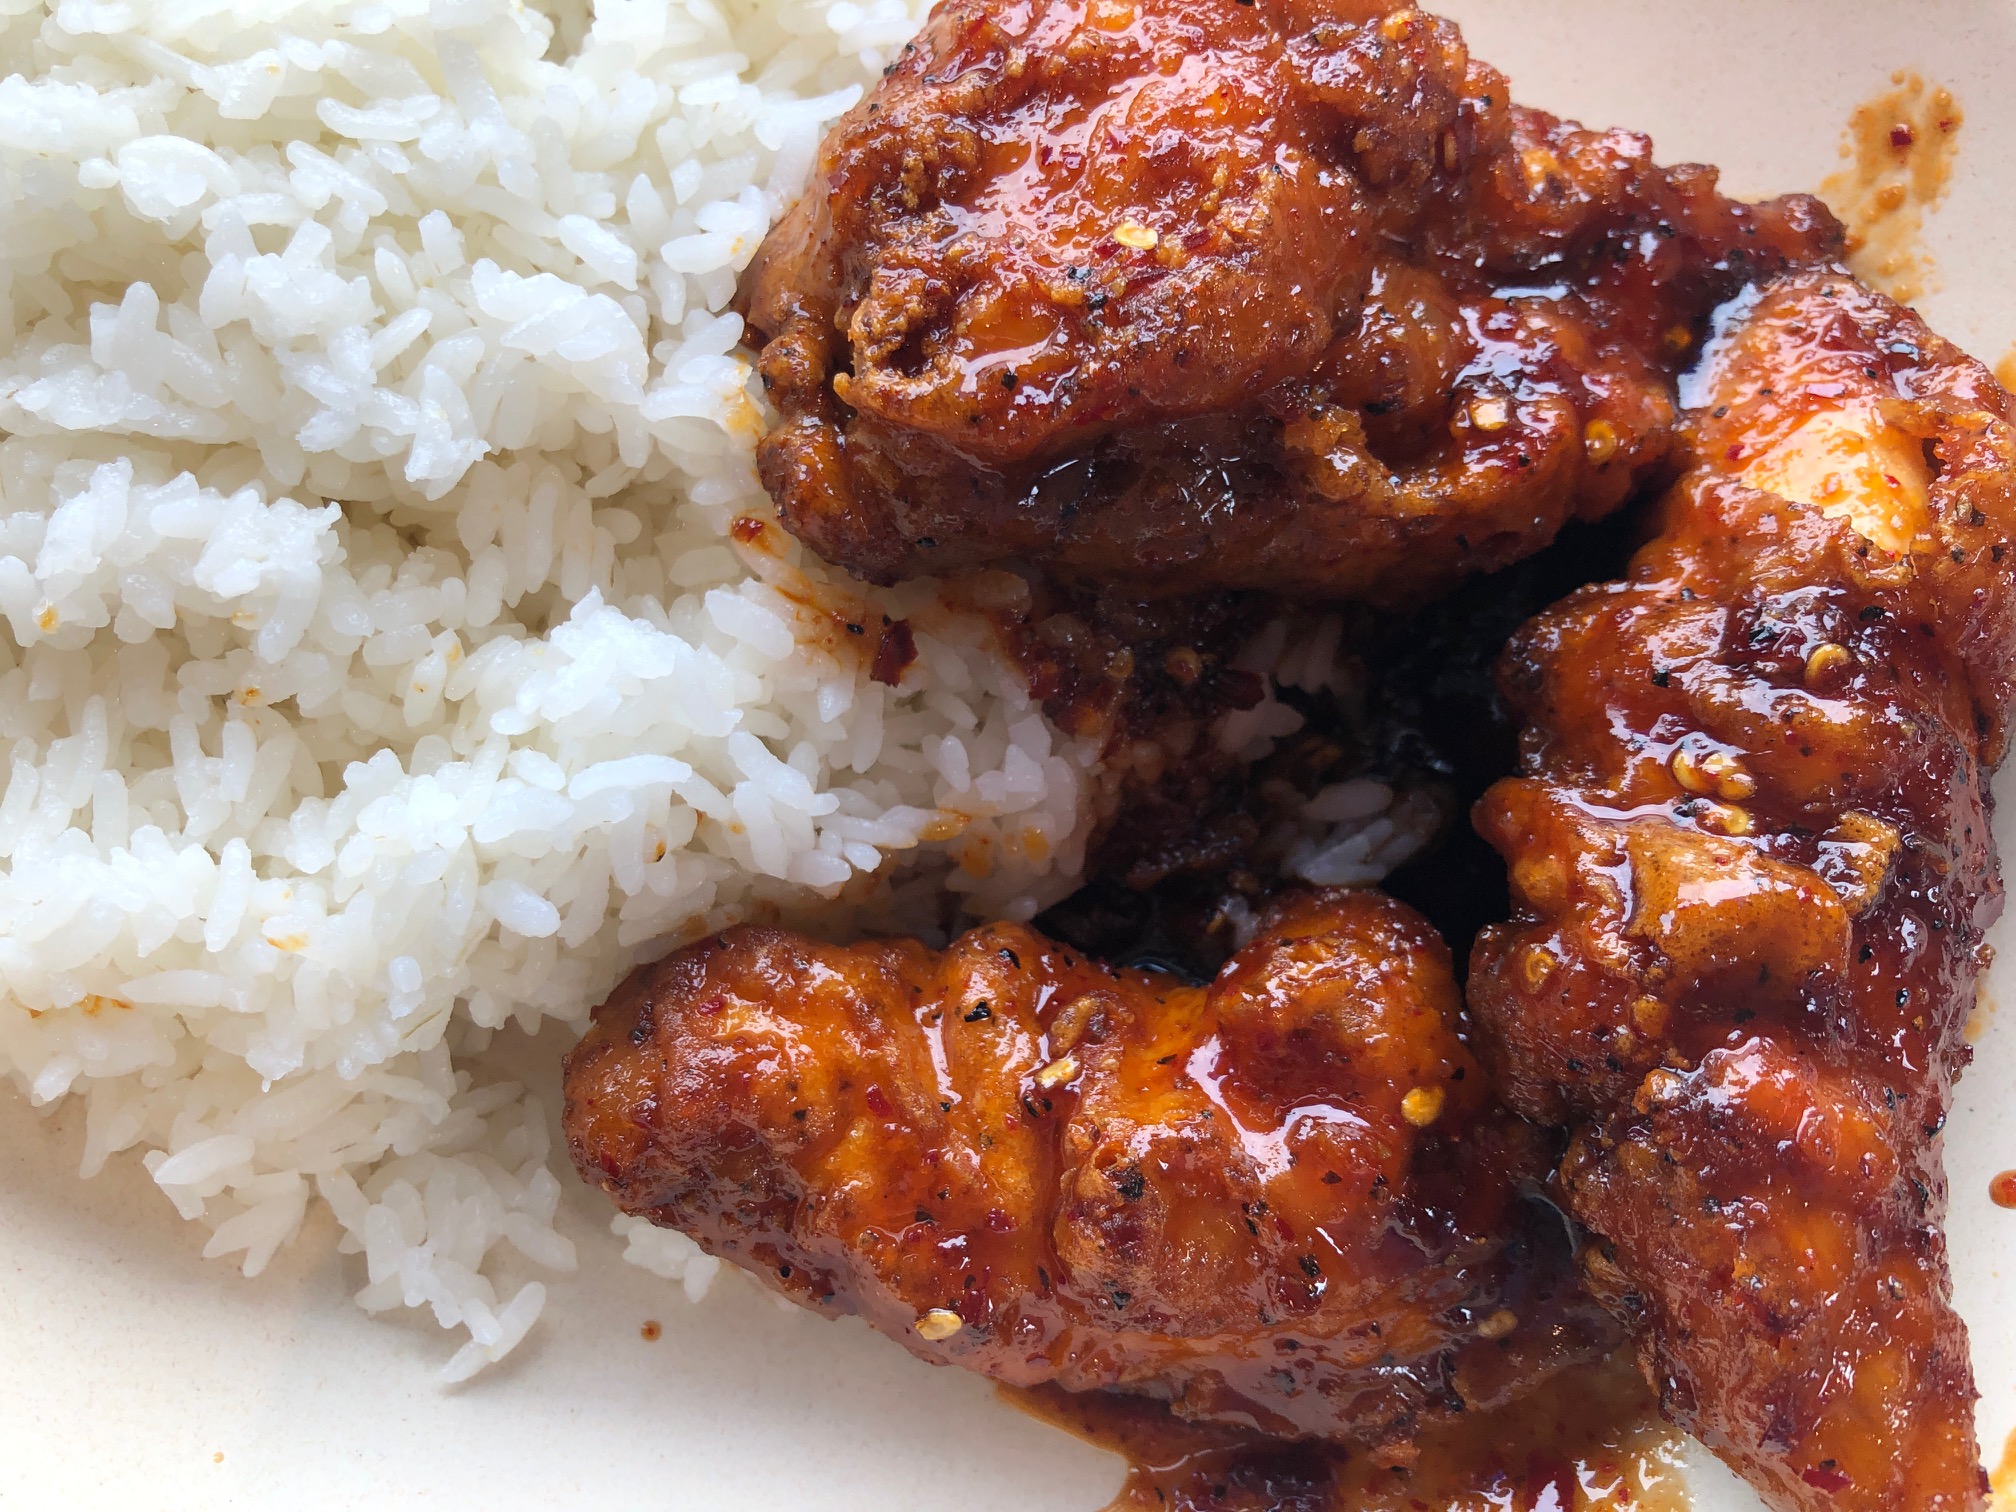 Spicy, saucy Korean chicken is on white steamed rice. Photo by Alyssa Buckley.